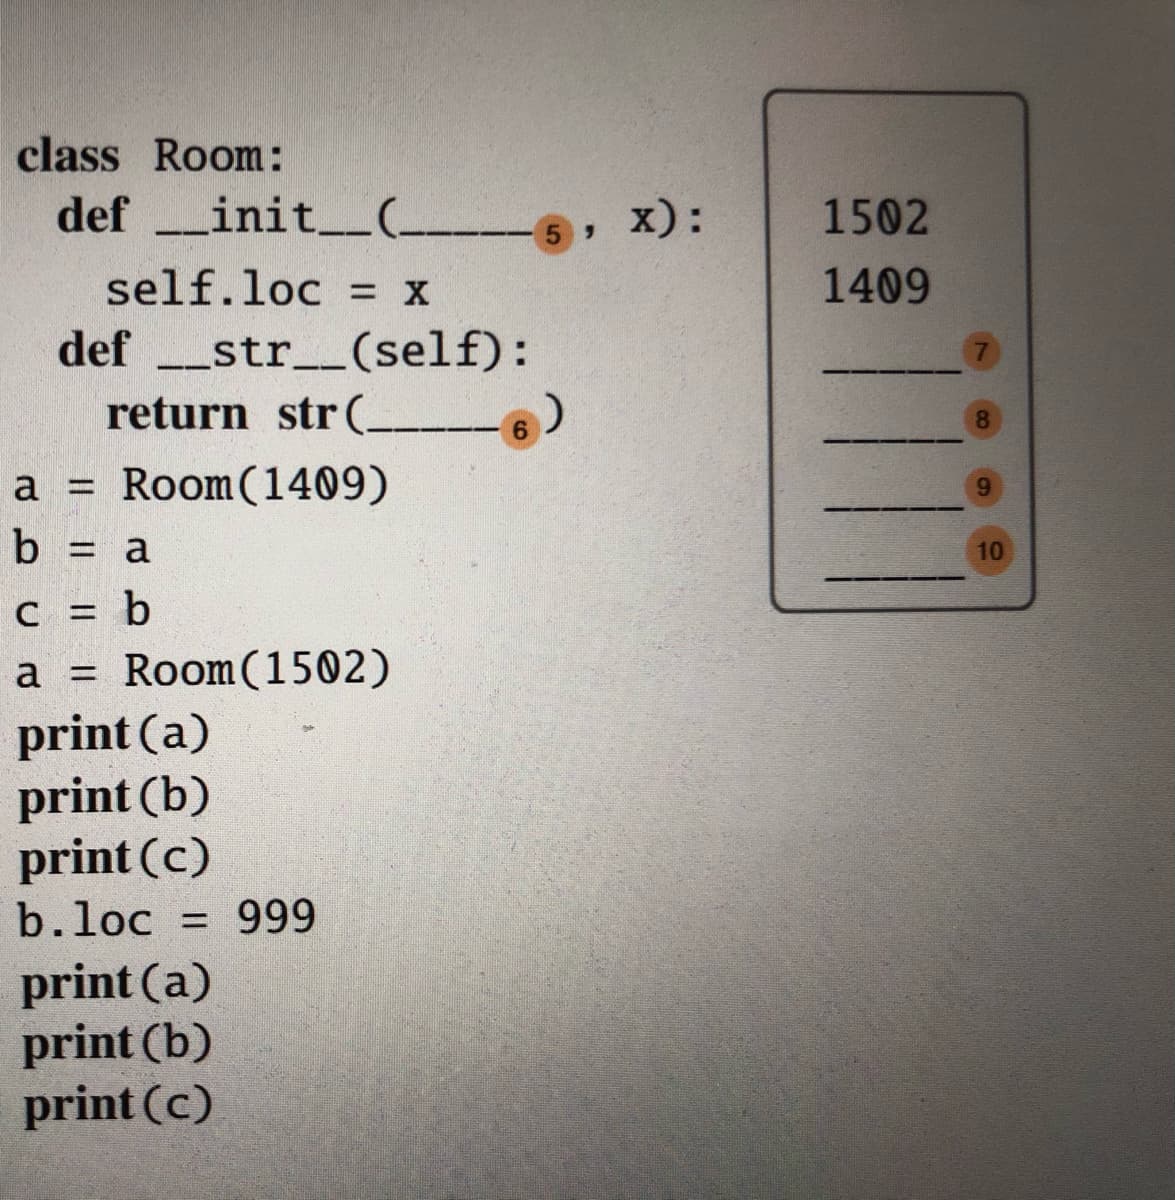 class Room:
def _init.
_init_(_
5 X):
1502
self.loc = x
1409
-_str__(self):
return str (
def
8.
6.
a = Room(1409)
a 3D
9.
b = a
10
c = b
a = Room(1502)
print (a)
print (b)
print (c)
b.loc = 999
print (a)
print (b)
print (c)
